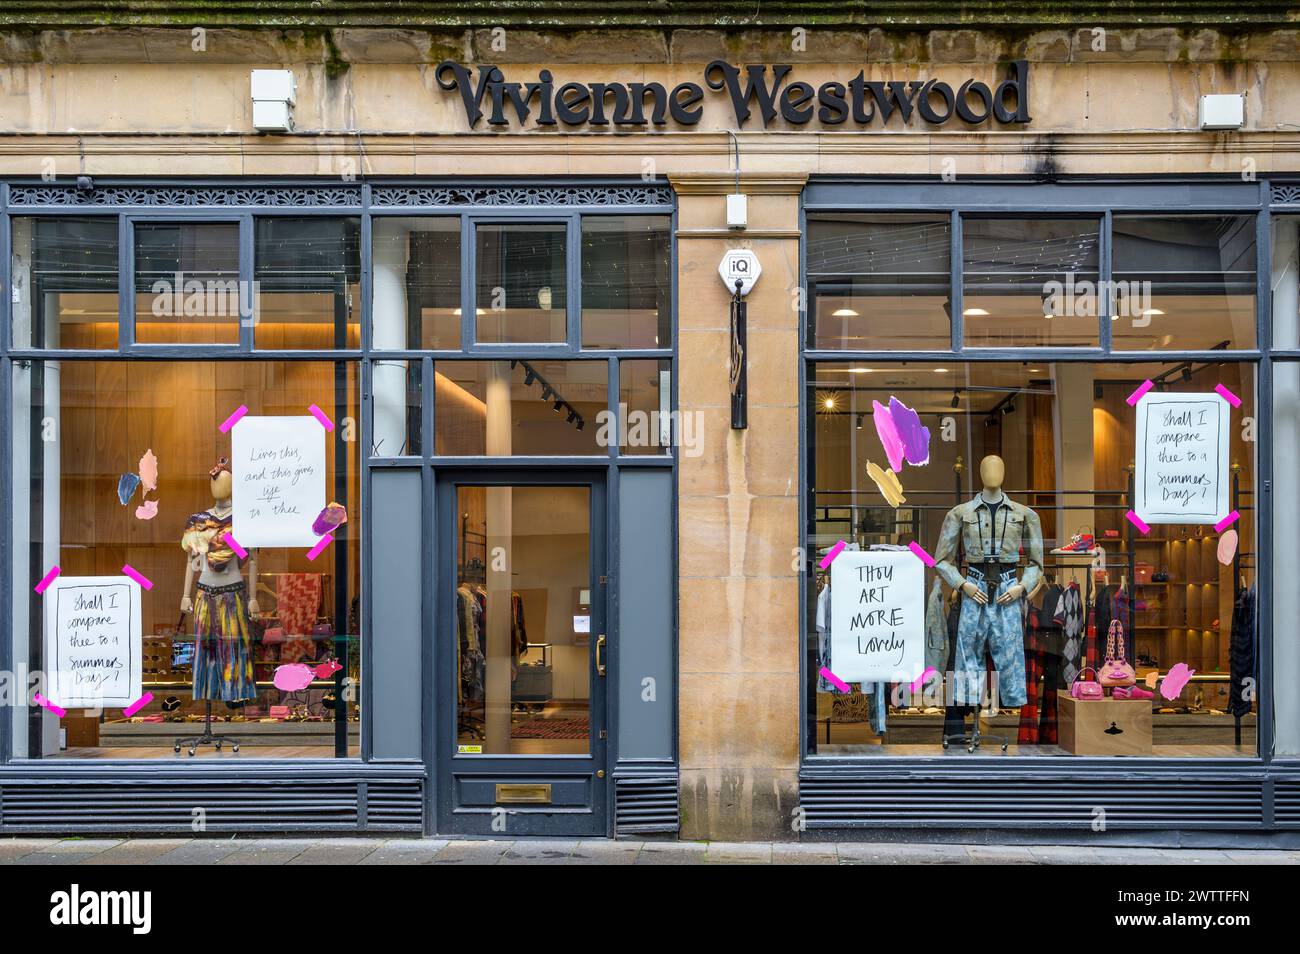 Vivienne Westwood shop, Glasgow, Scotland, UK, Europe Stock Photo